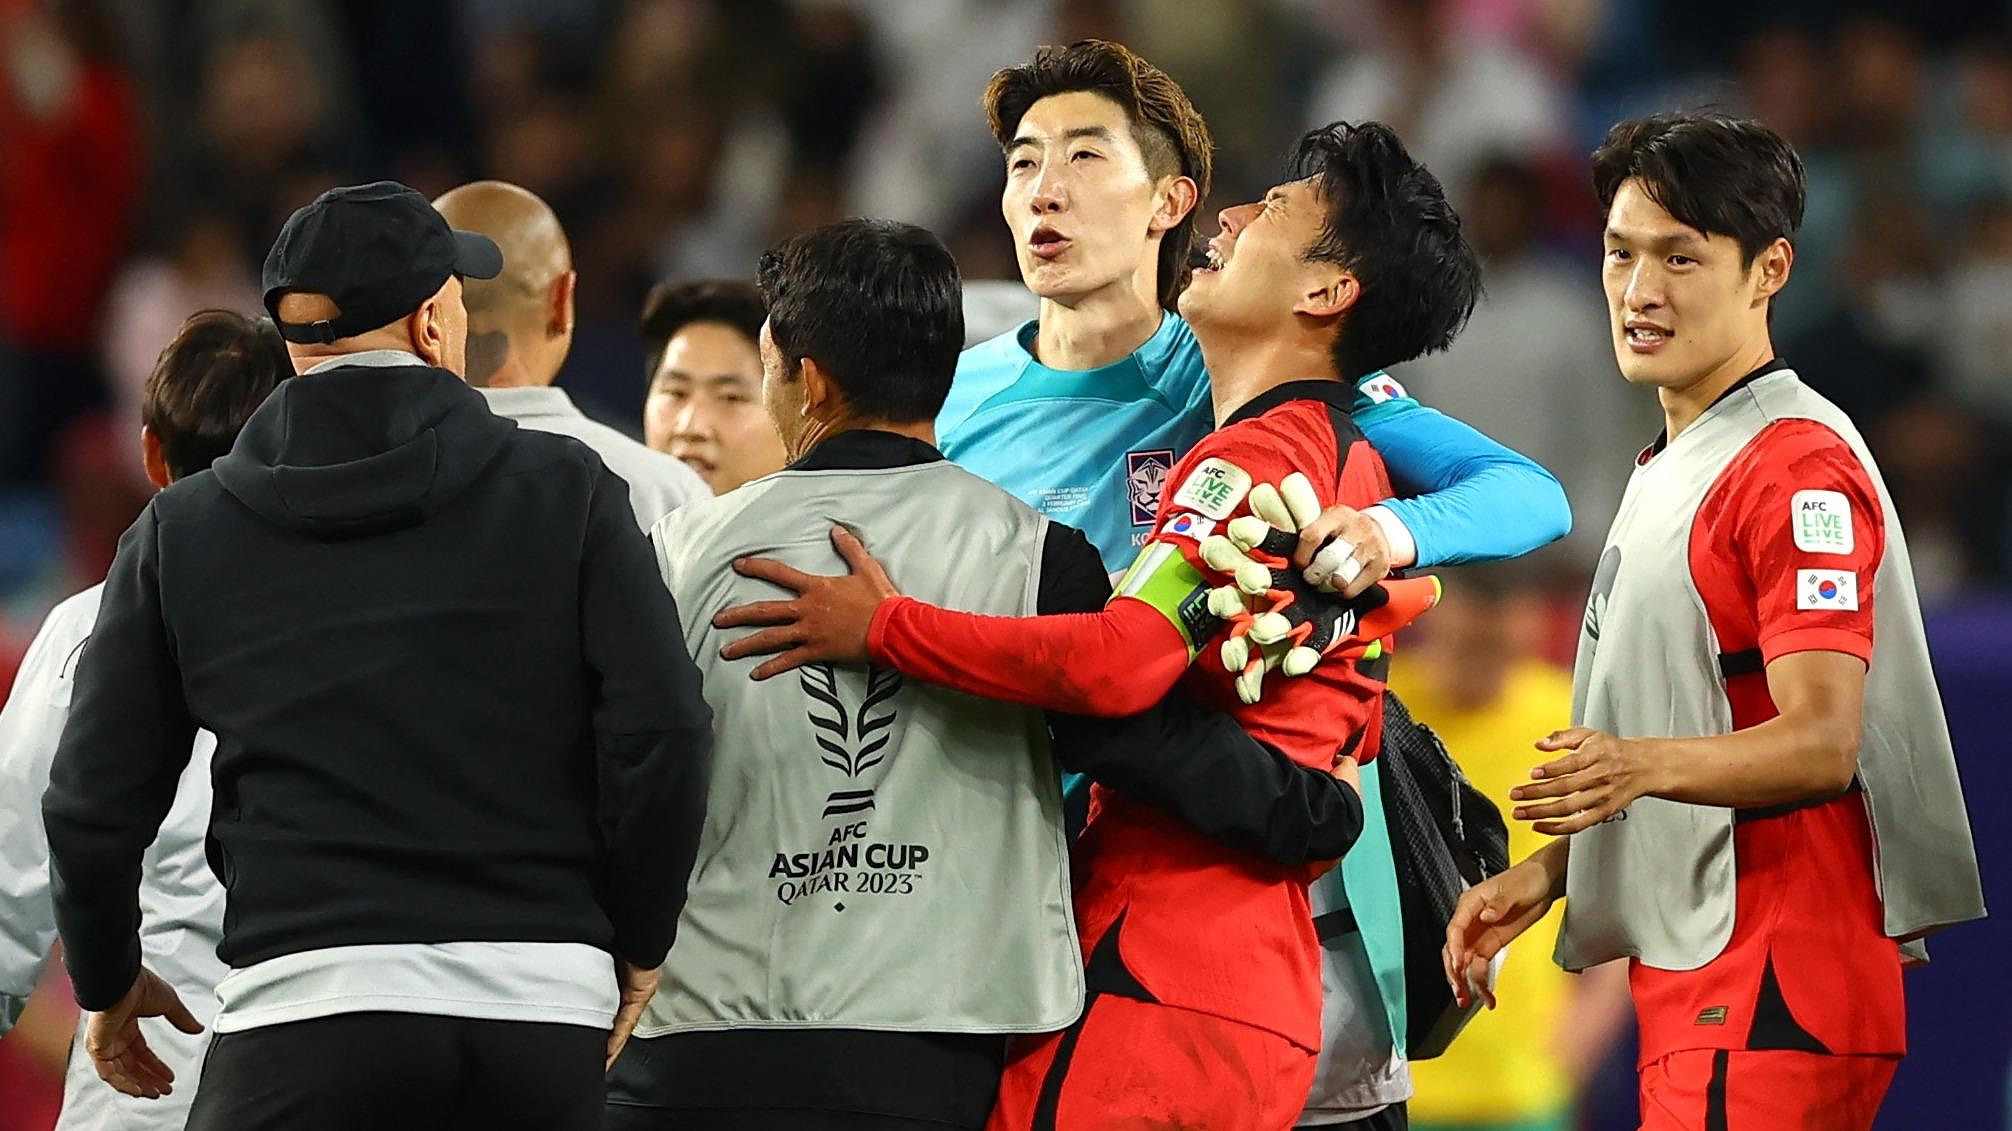 Asian Cup: miraculous again, South Korea reaches the final four